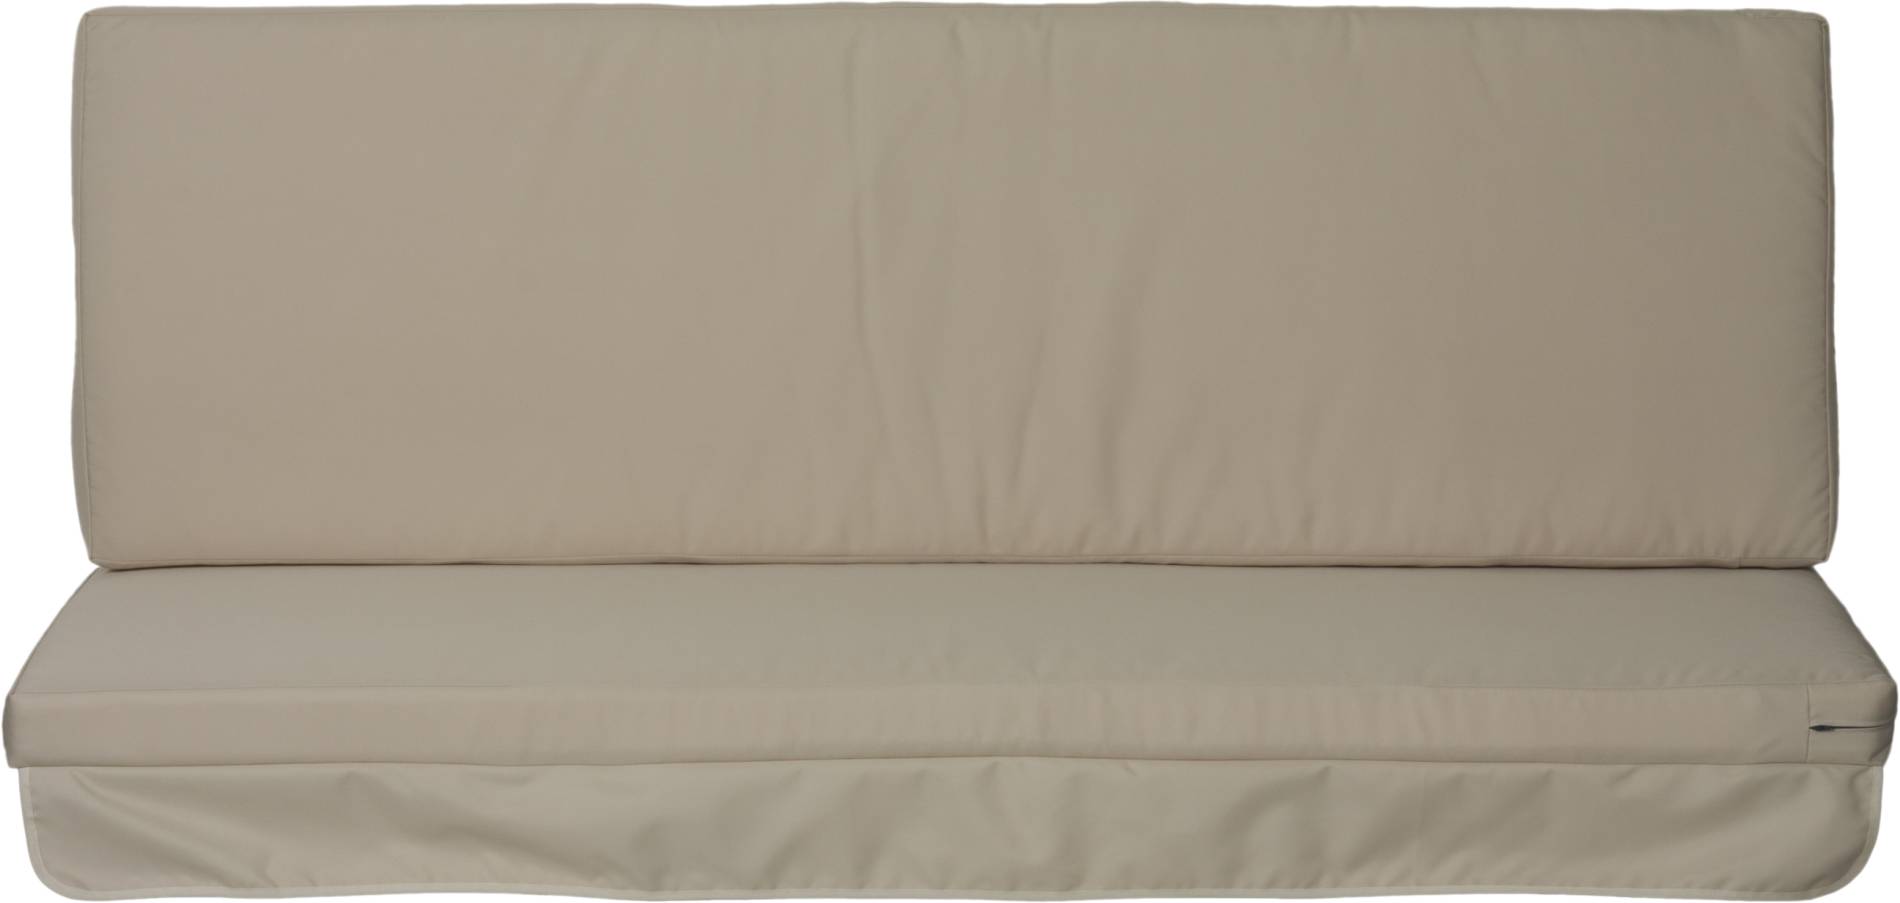 Premium Schaukelauflage Kissen mit Reissverschlüssen für Hollywoodschaukel wasserabweisend in beige 2-teilig